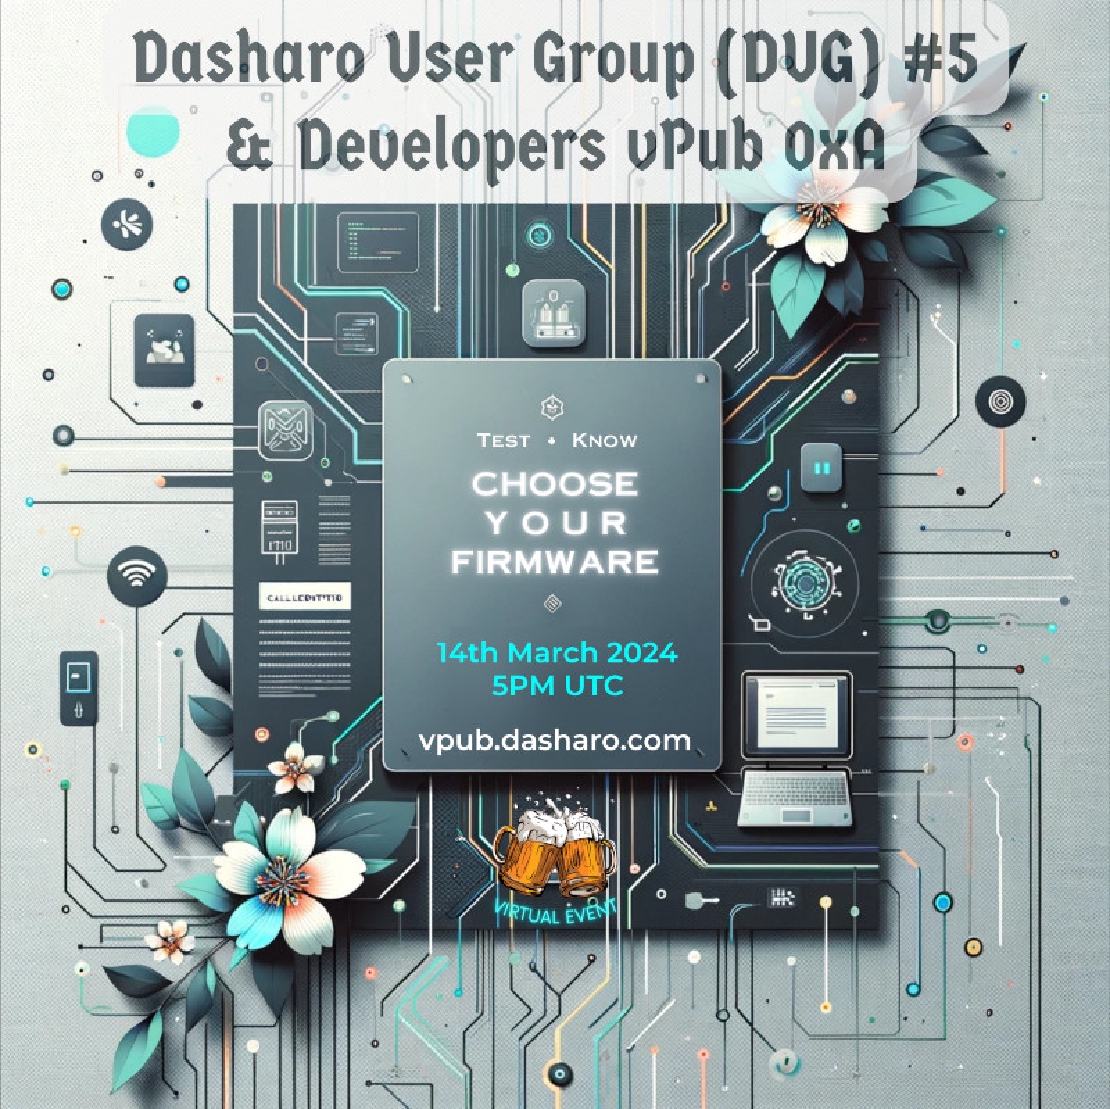 Dasharo User Group 0x5 **& Developers vPub 0xA**